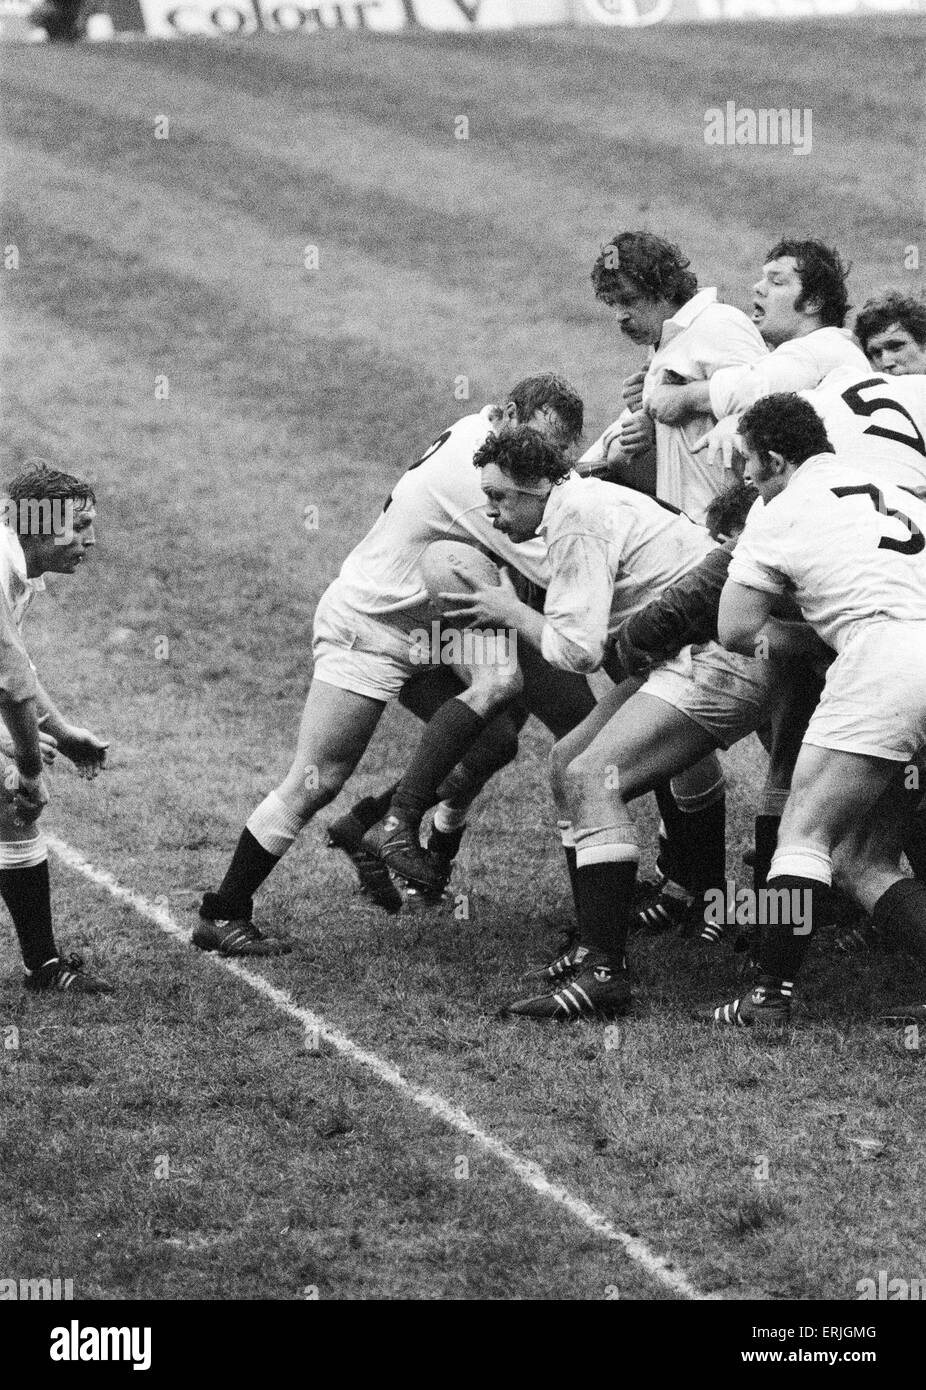 Des cinq nations de rugby international match à Twickenham. 24 l'Angleterre v Irlande 9. Au cours de l'action du match Angleterre impliquant Bill Beaumont passer la balle hors du ruck. 19 janvier 1980. Banque D'Images